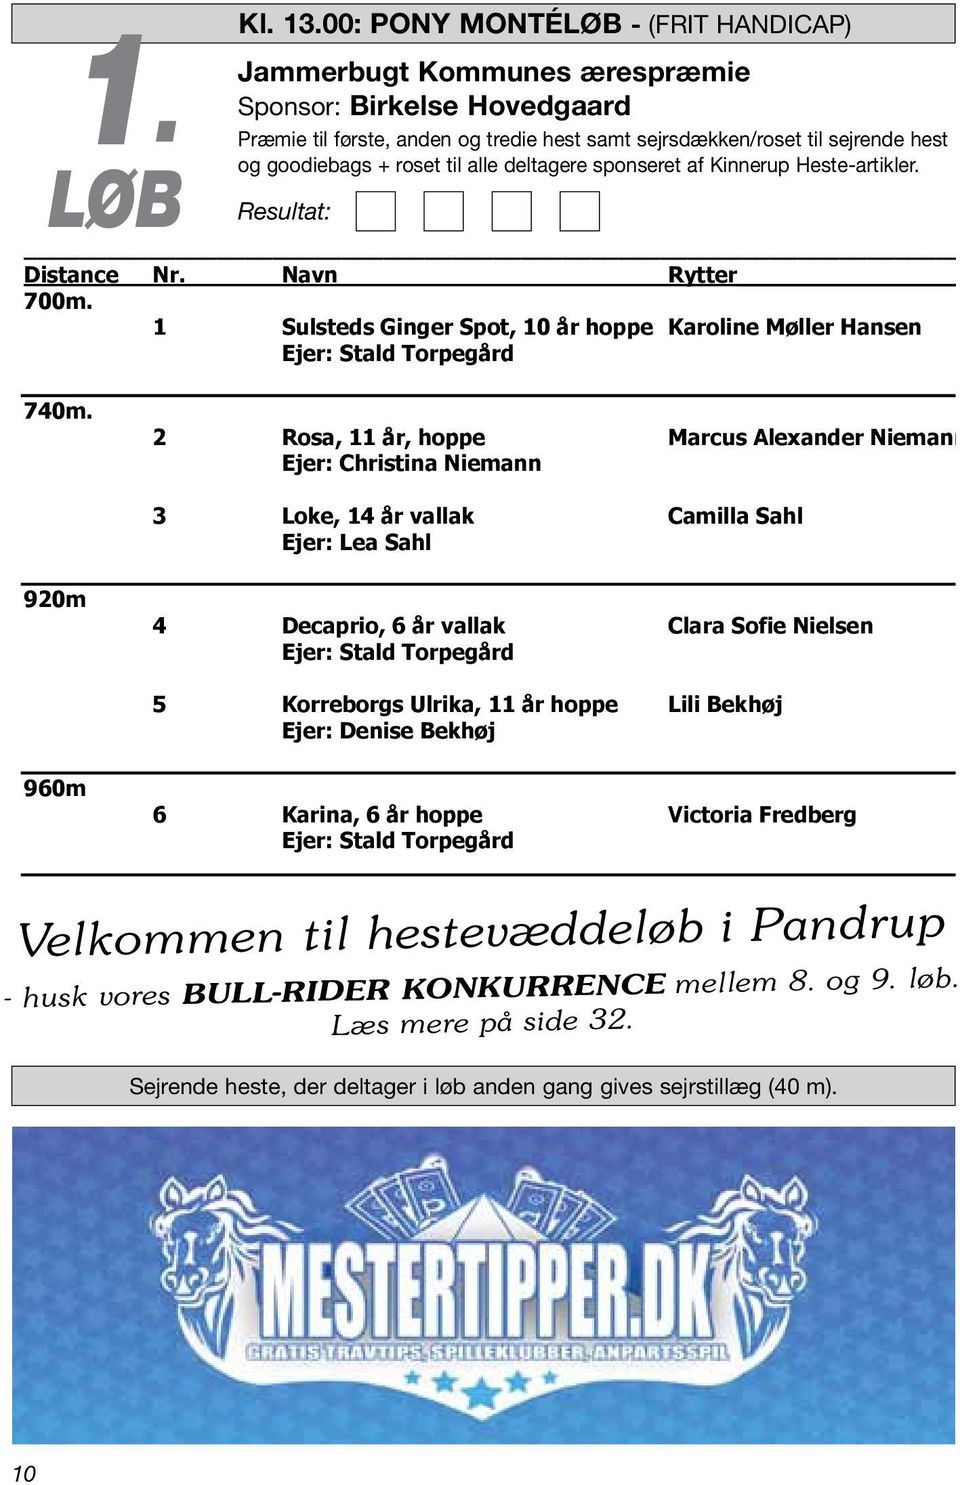 Præmie til første, anden og tredje heste samt sejrsdækken/roset til sejrende heste og LØB Goodie bags + Resultat: roset til alle deltagere sponseret af Kinnerup Heste-artikler 1. løb kl.